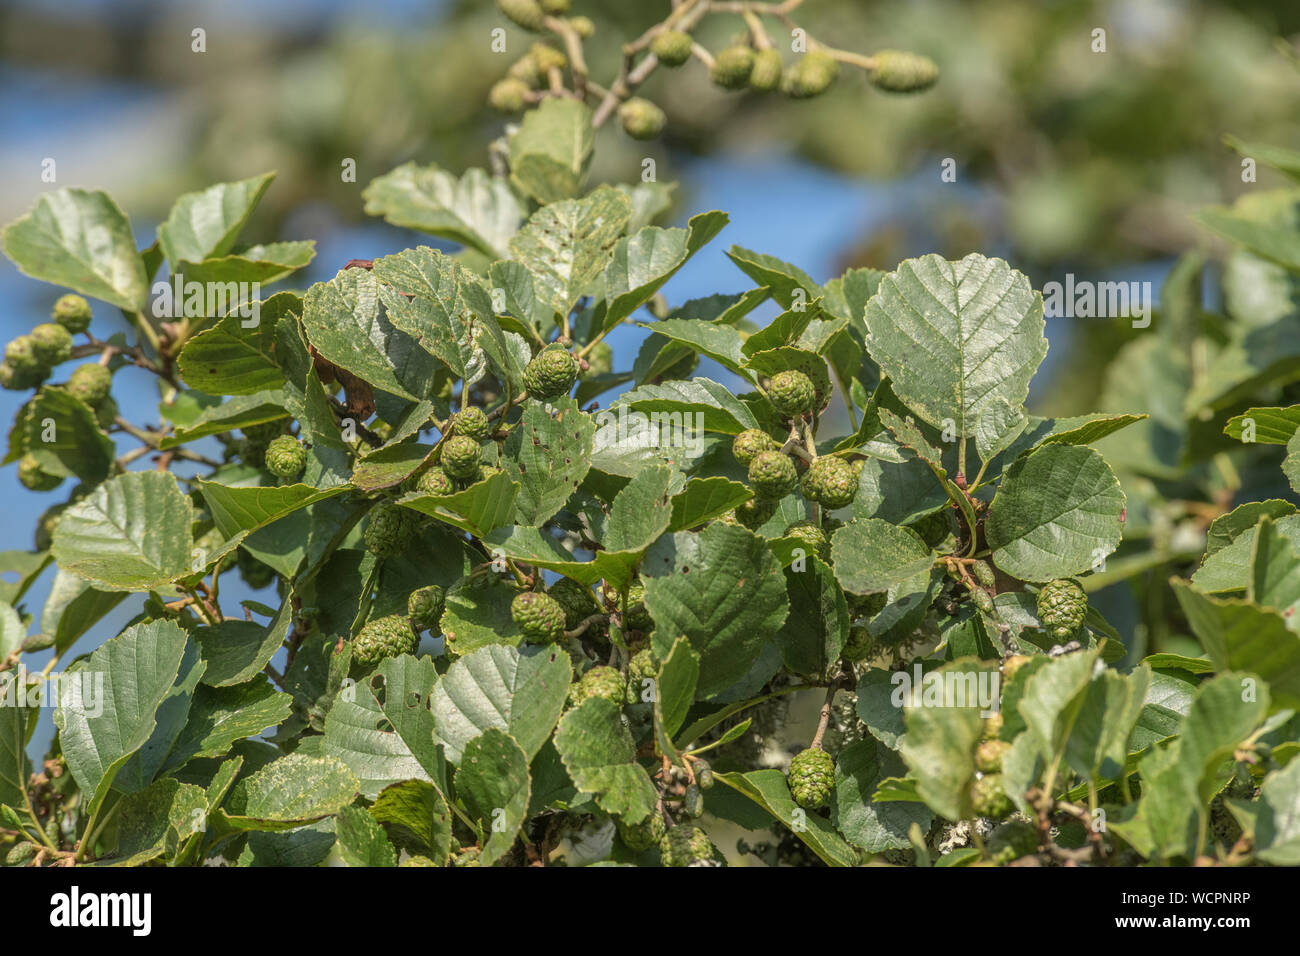 Grüne Kegel/Früchte und Blätter der Gemeinsamen Erle/Alnus glutinosa. Einmal als Heilpflanze in pflanzliche Heilmittel verwendet. Stockfoto